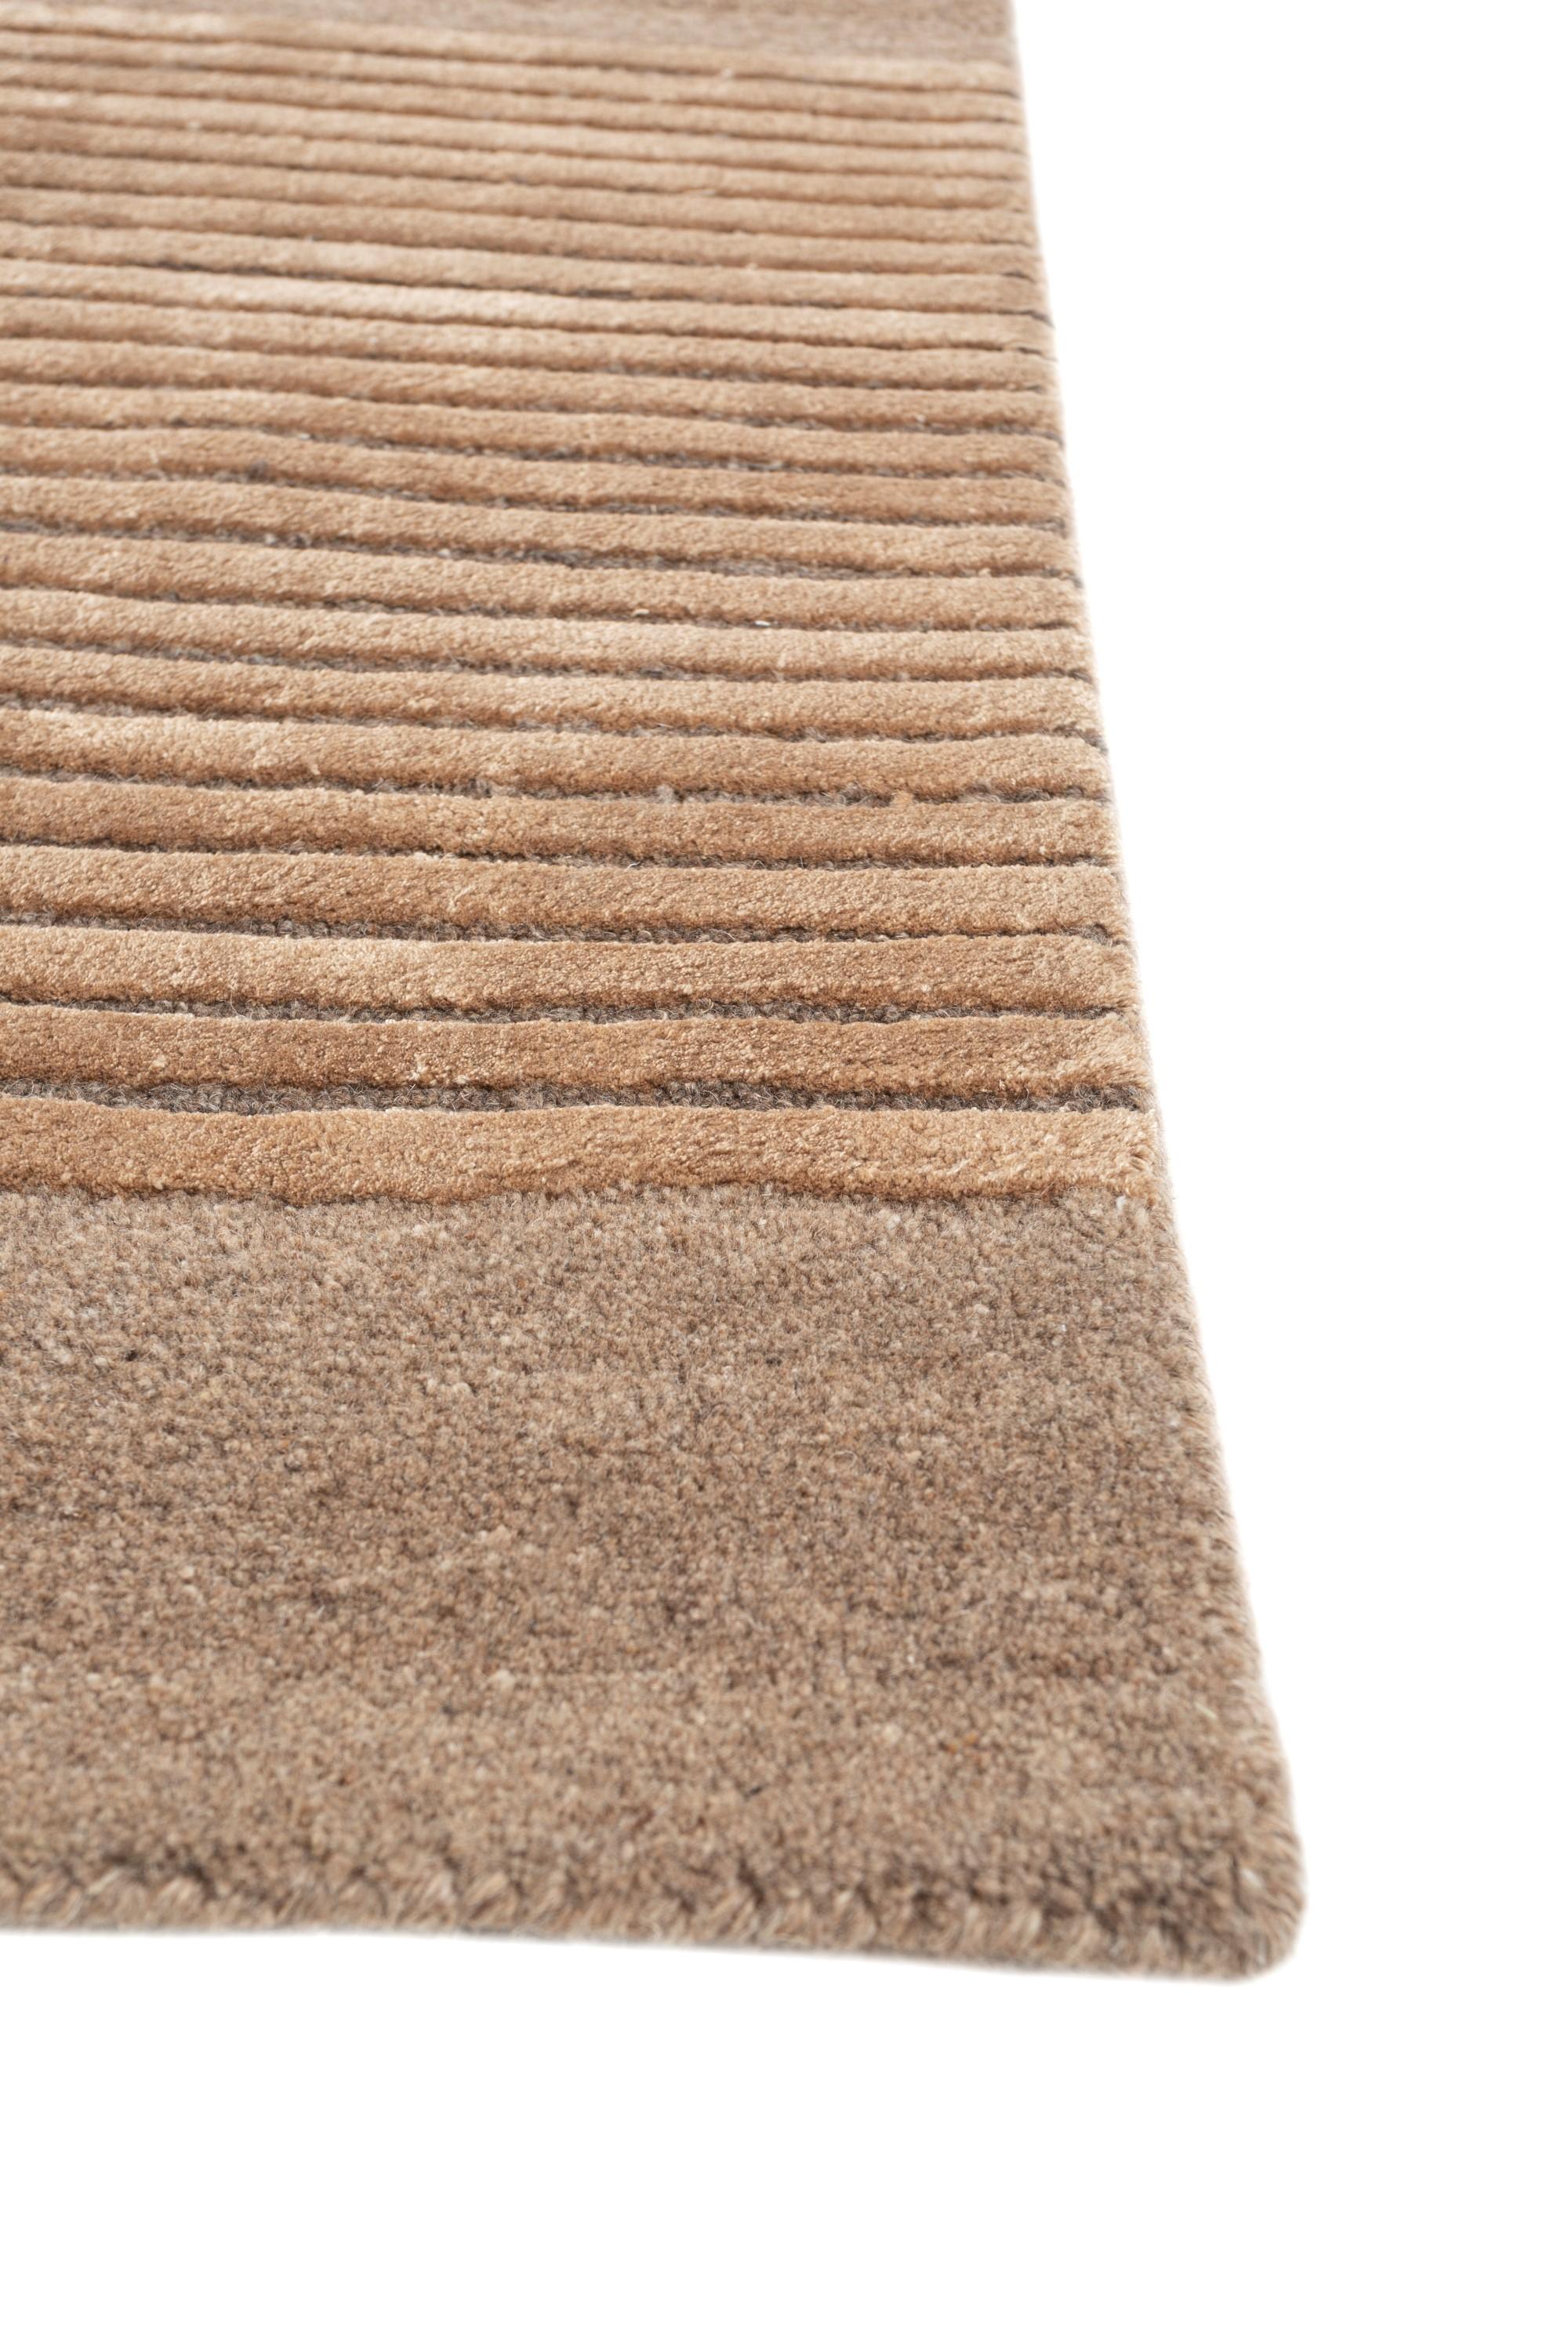 Lassen Sie sich von dem verführerischen Charme dieses pfirsichfarbenen Teppichs aus unserer Aprezo Collection'S verführen. Das Besondere an diesem Teppich ist sein skurriles, geschwungenes Muster, das sich wohltuend von den alltäglichen geraden